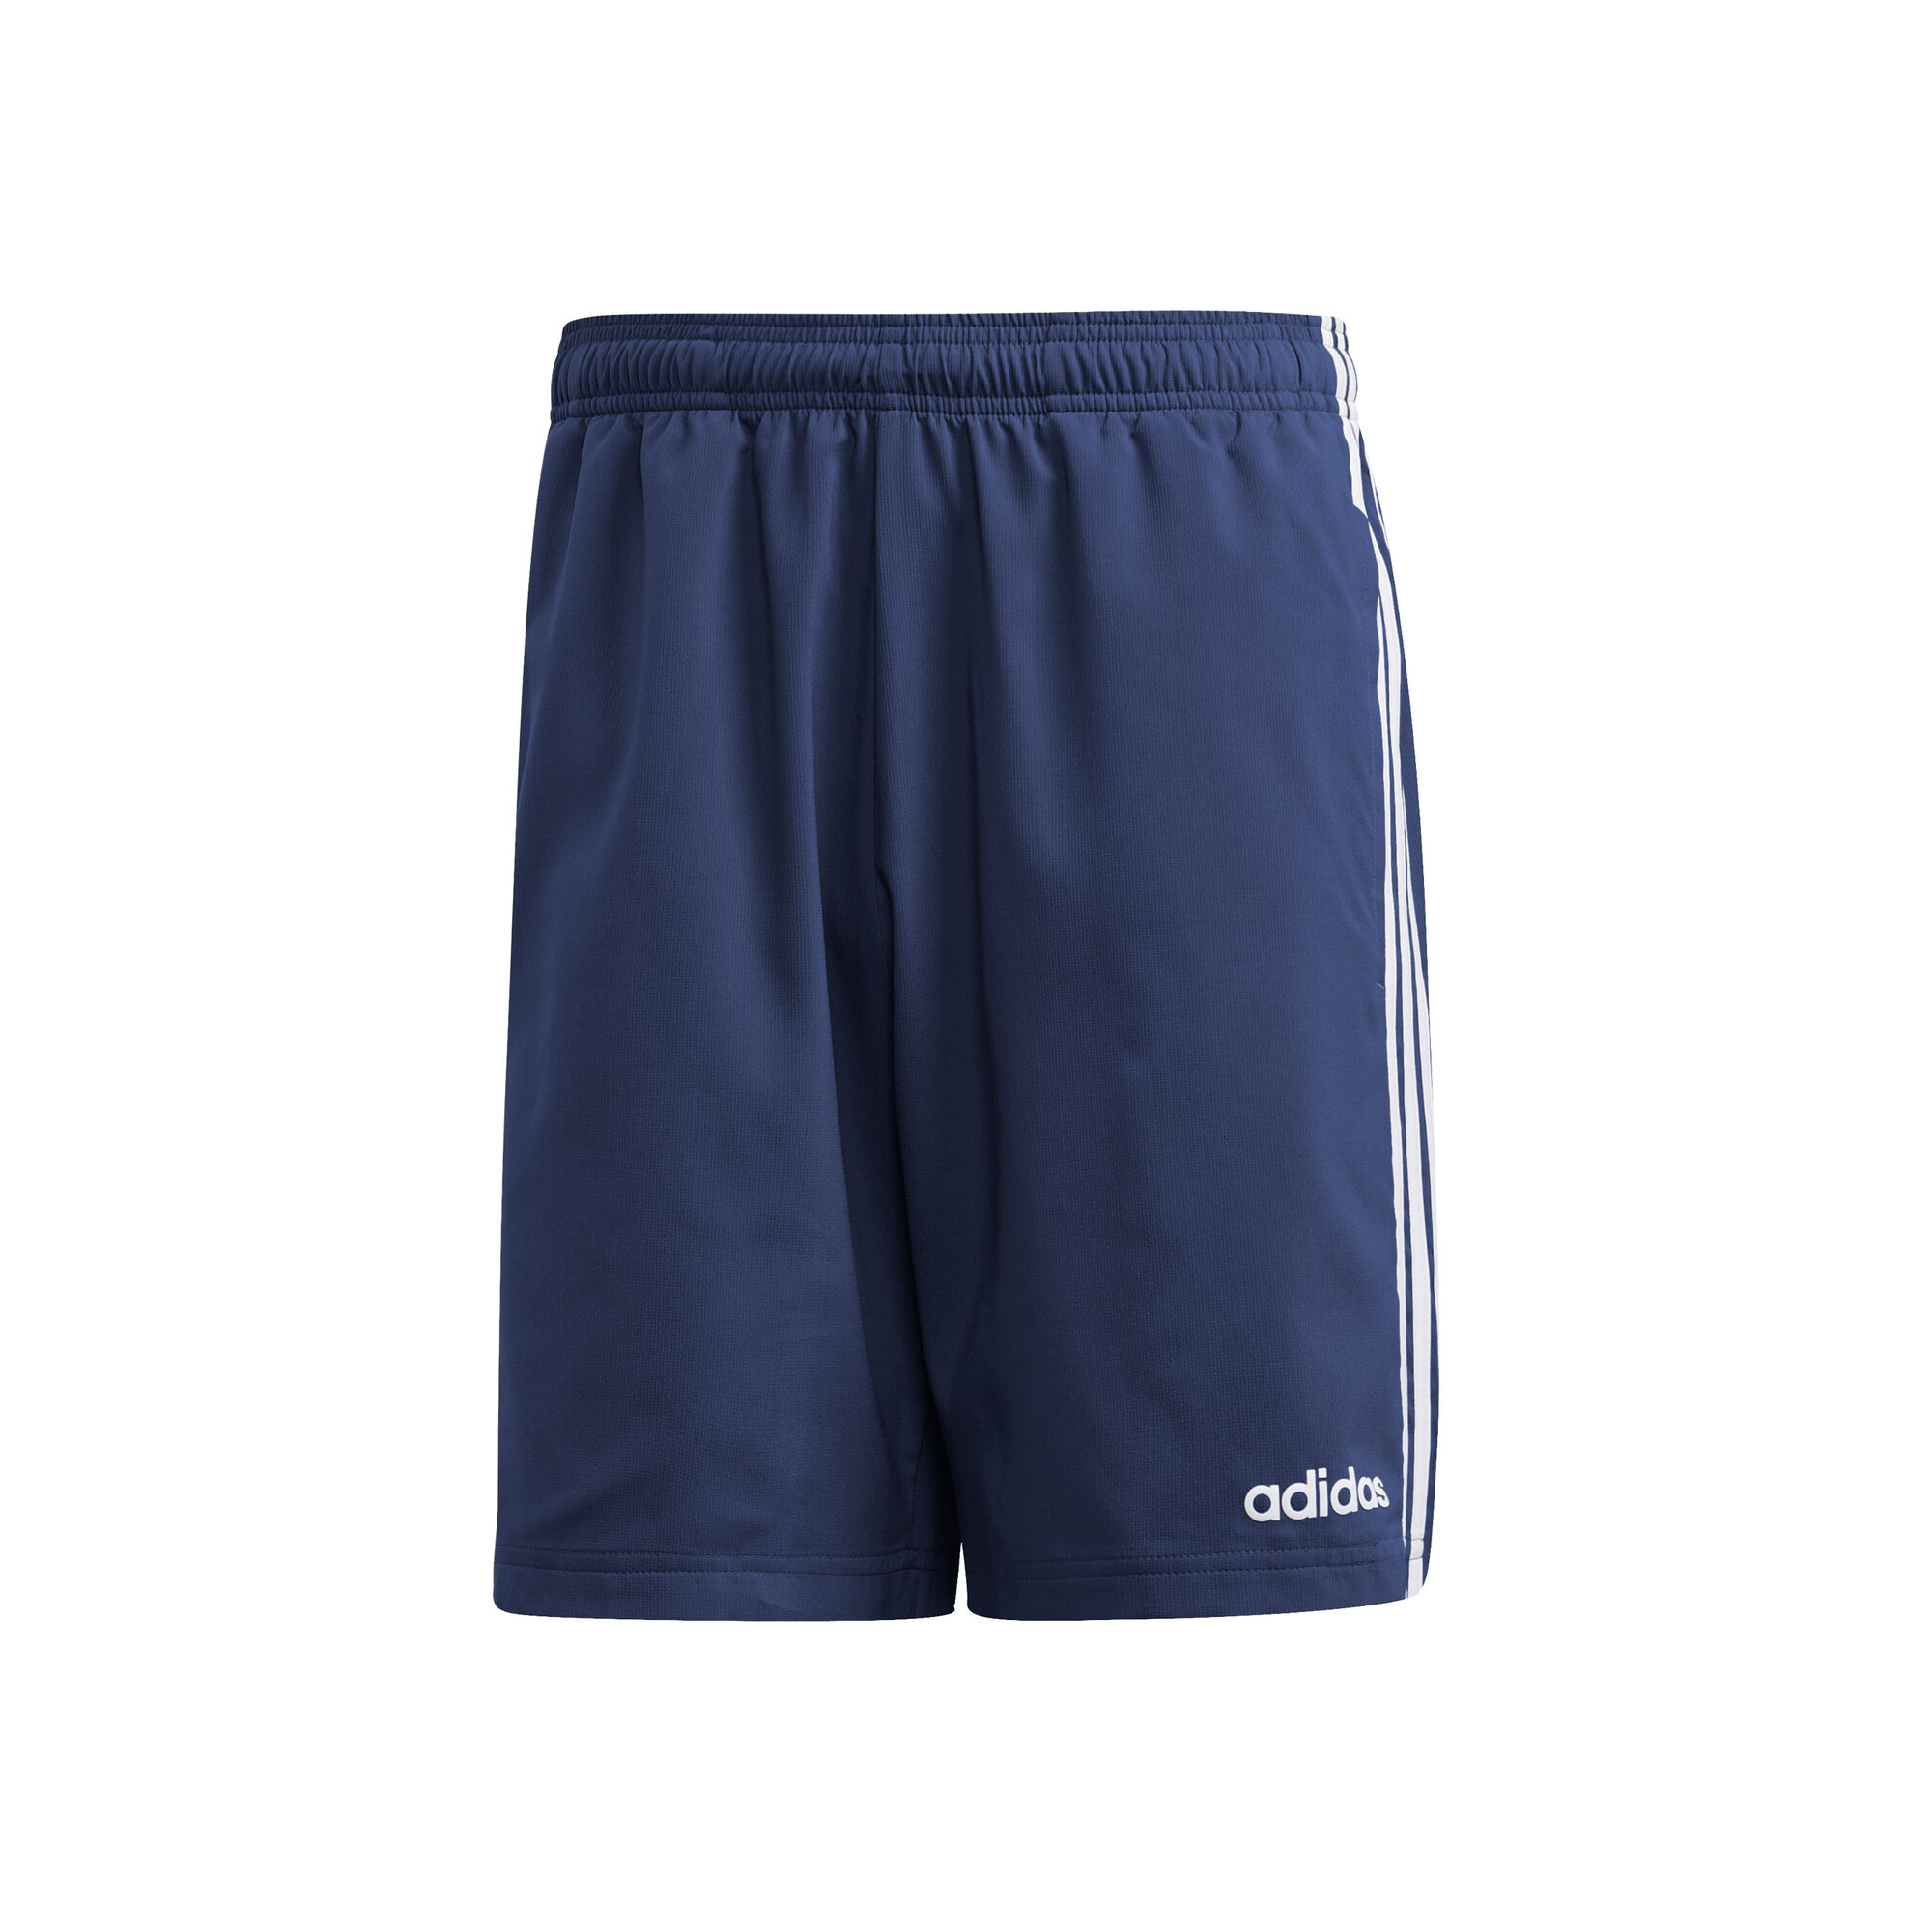 De Verdad articulo tornado adidas Essentials 3-Stripes Chelsea Shorts Hombres - Azul Oscuro, Blanco  compra online | Tennis-Point